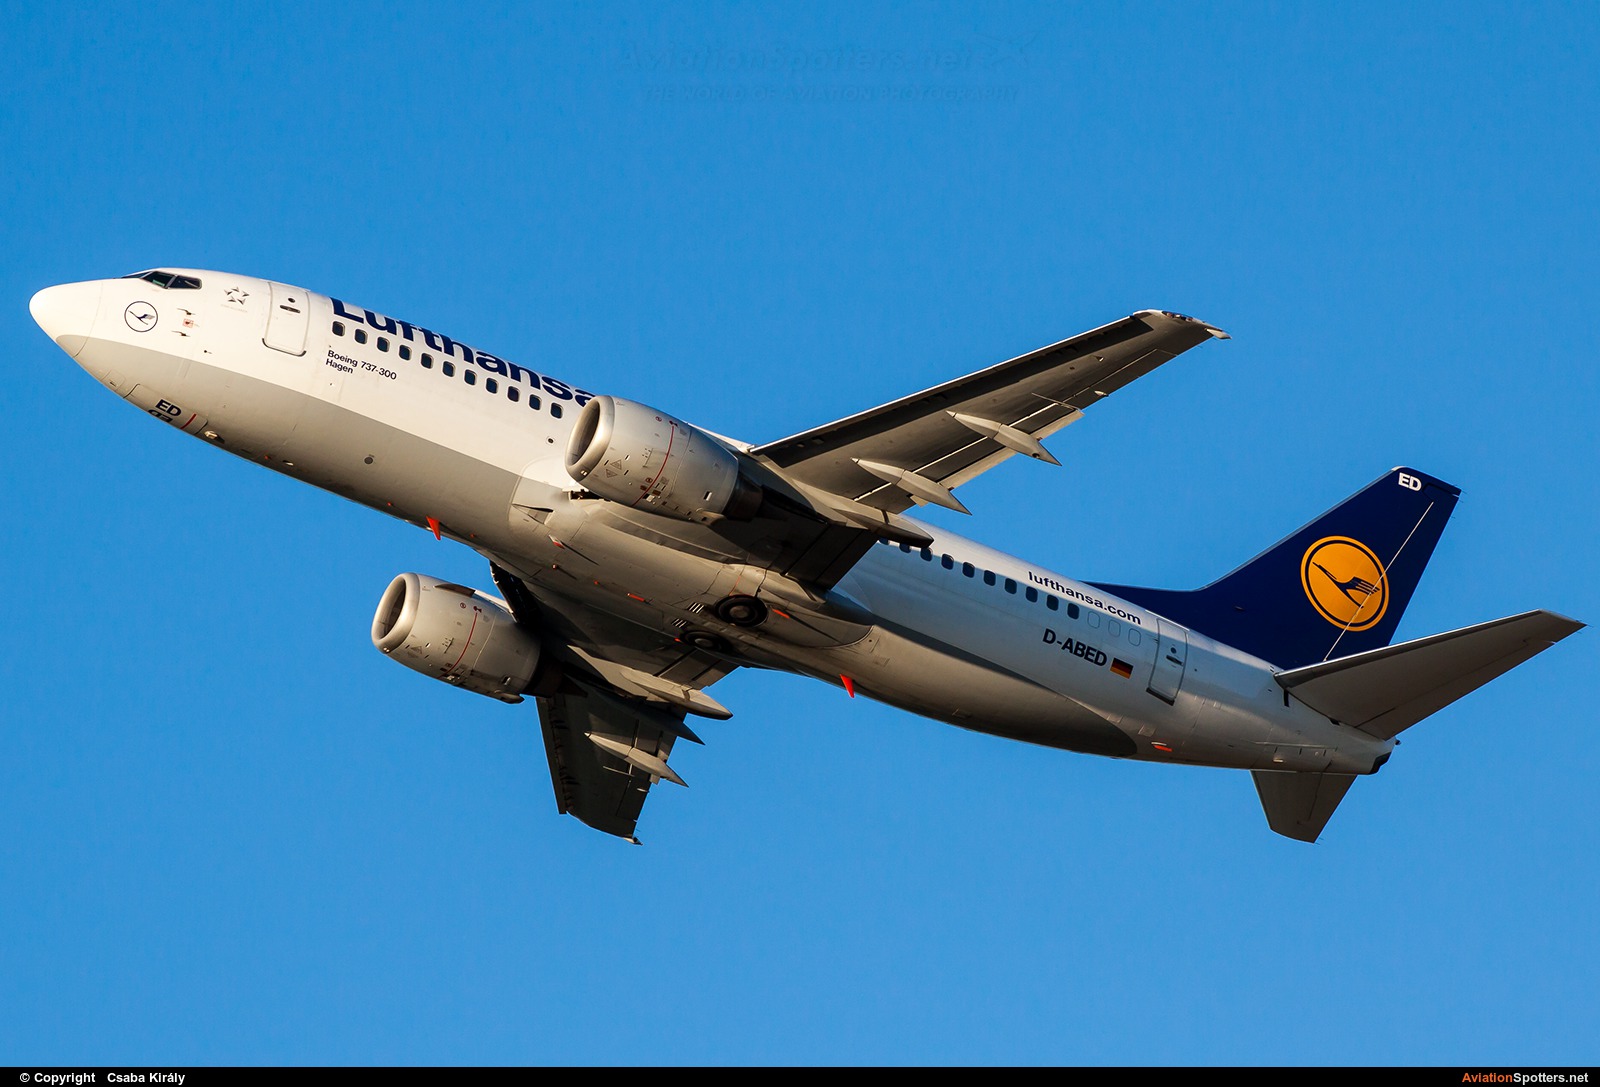 Lufthansa  -  737-300  (D-ABED) By Csaba Király (Csaba Kiraly)